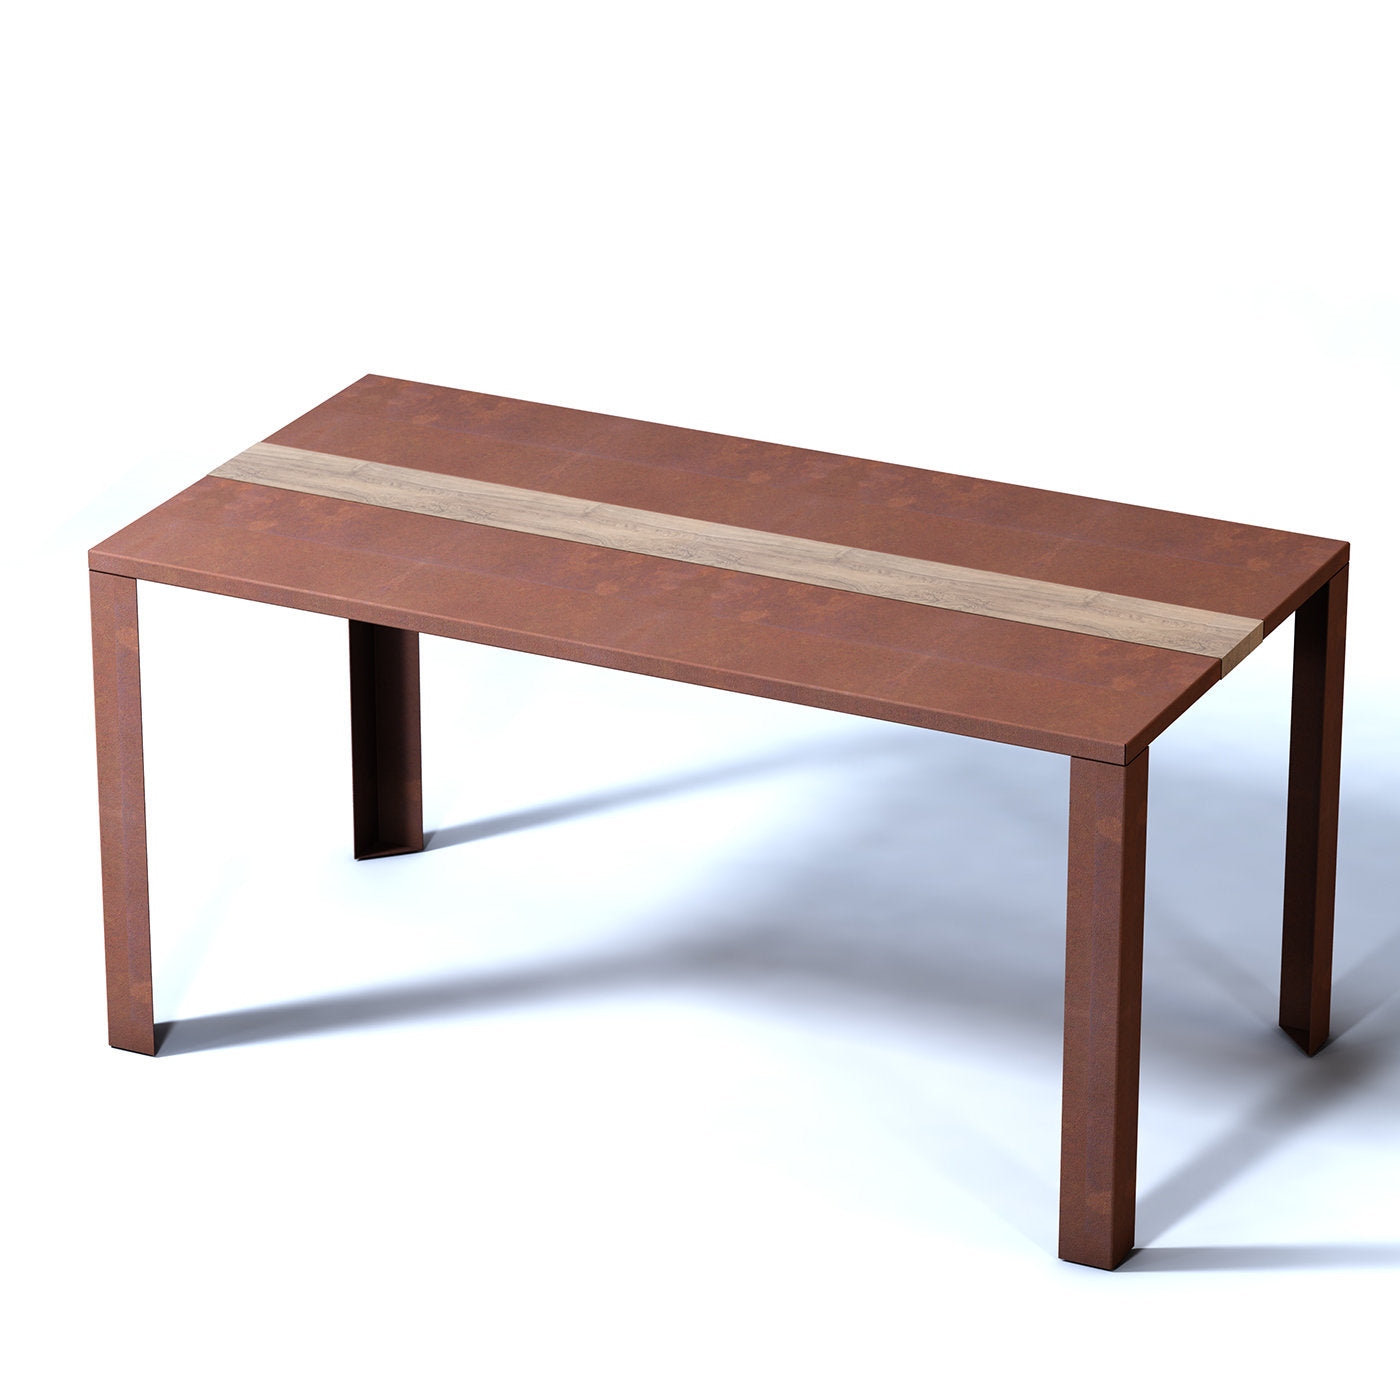 Linear Corten Steel Table - Alternative view 1